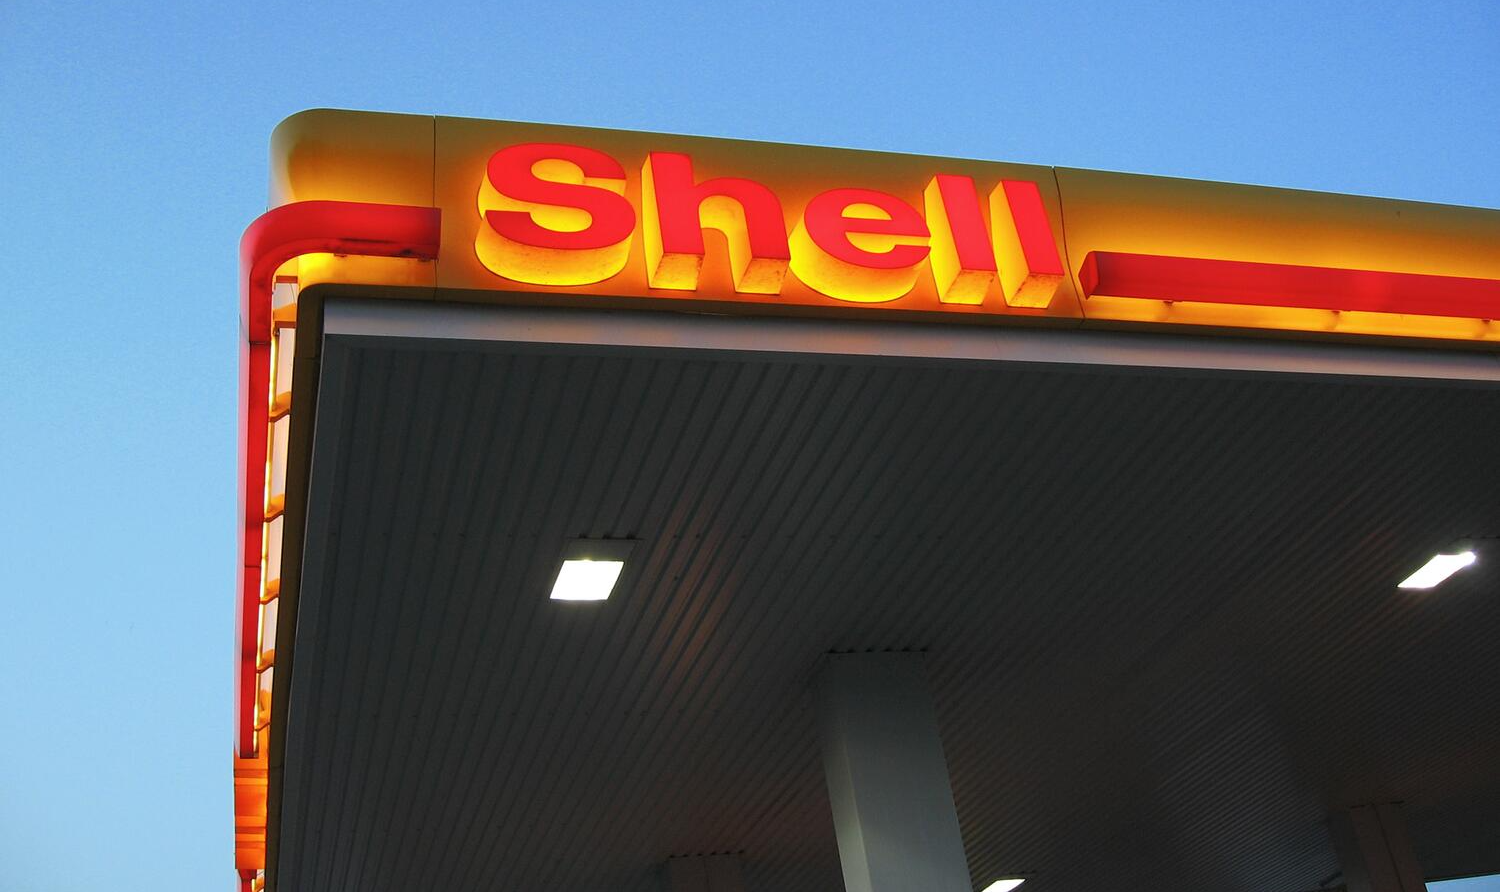 Em meio a cifras bilionárias, Shell cortou desenvolvimento de soluções de baixa emissão de carbono para focar em projetos prejudiciais ao meio ambiente